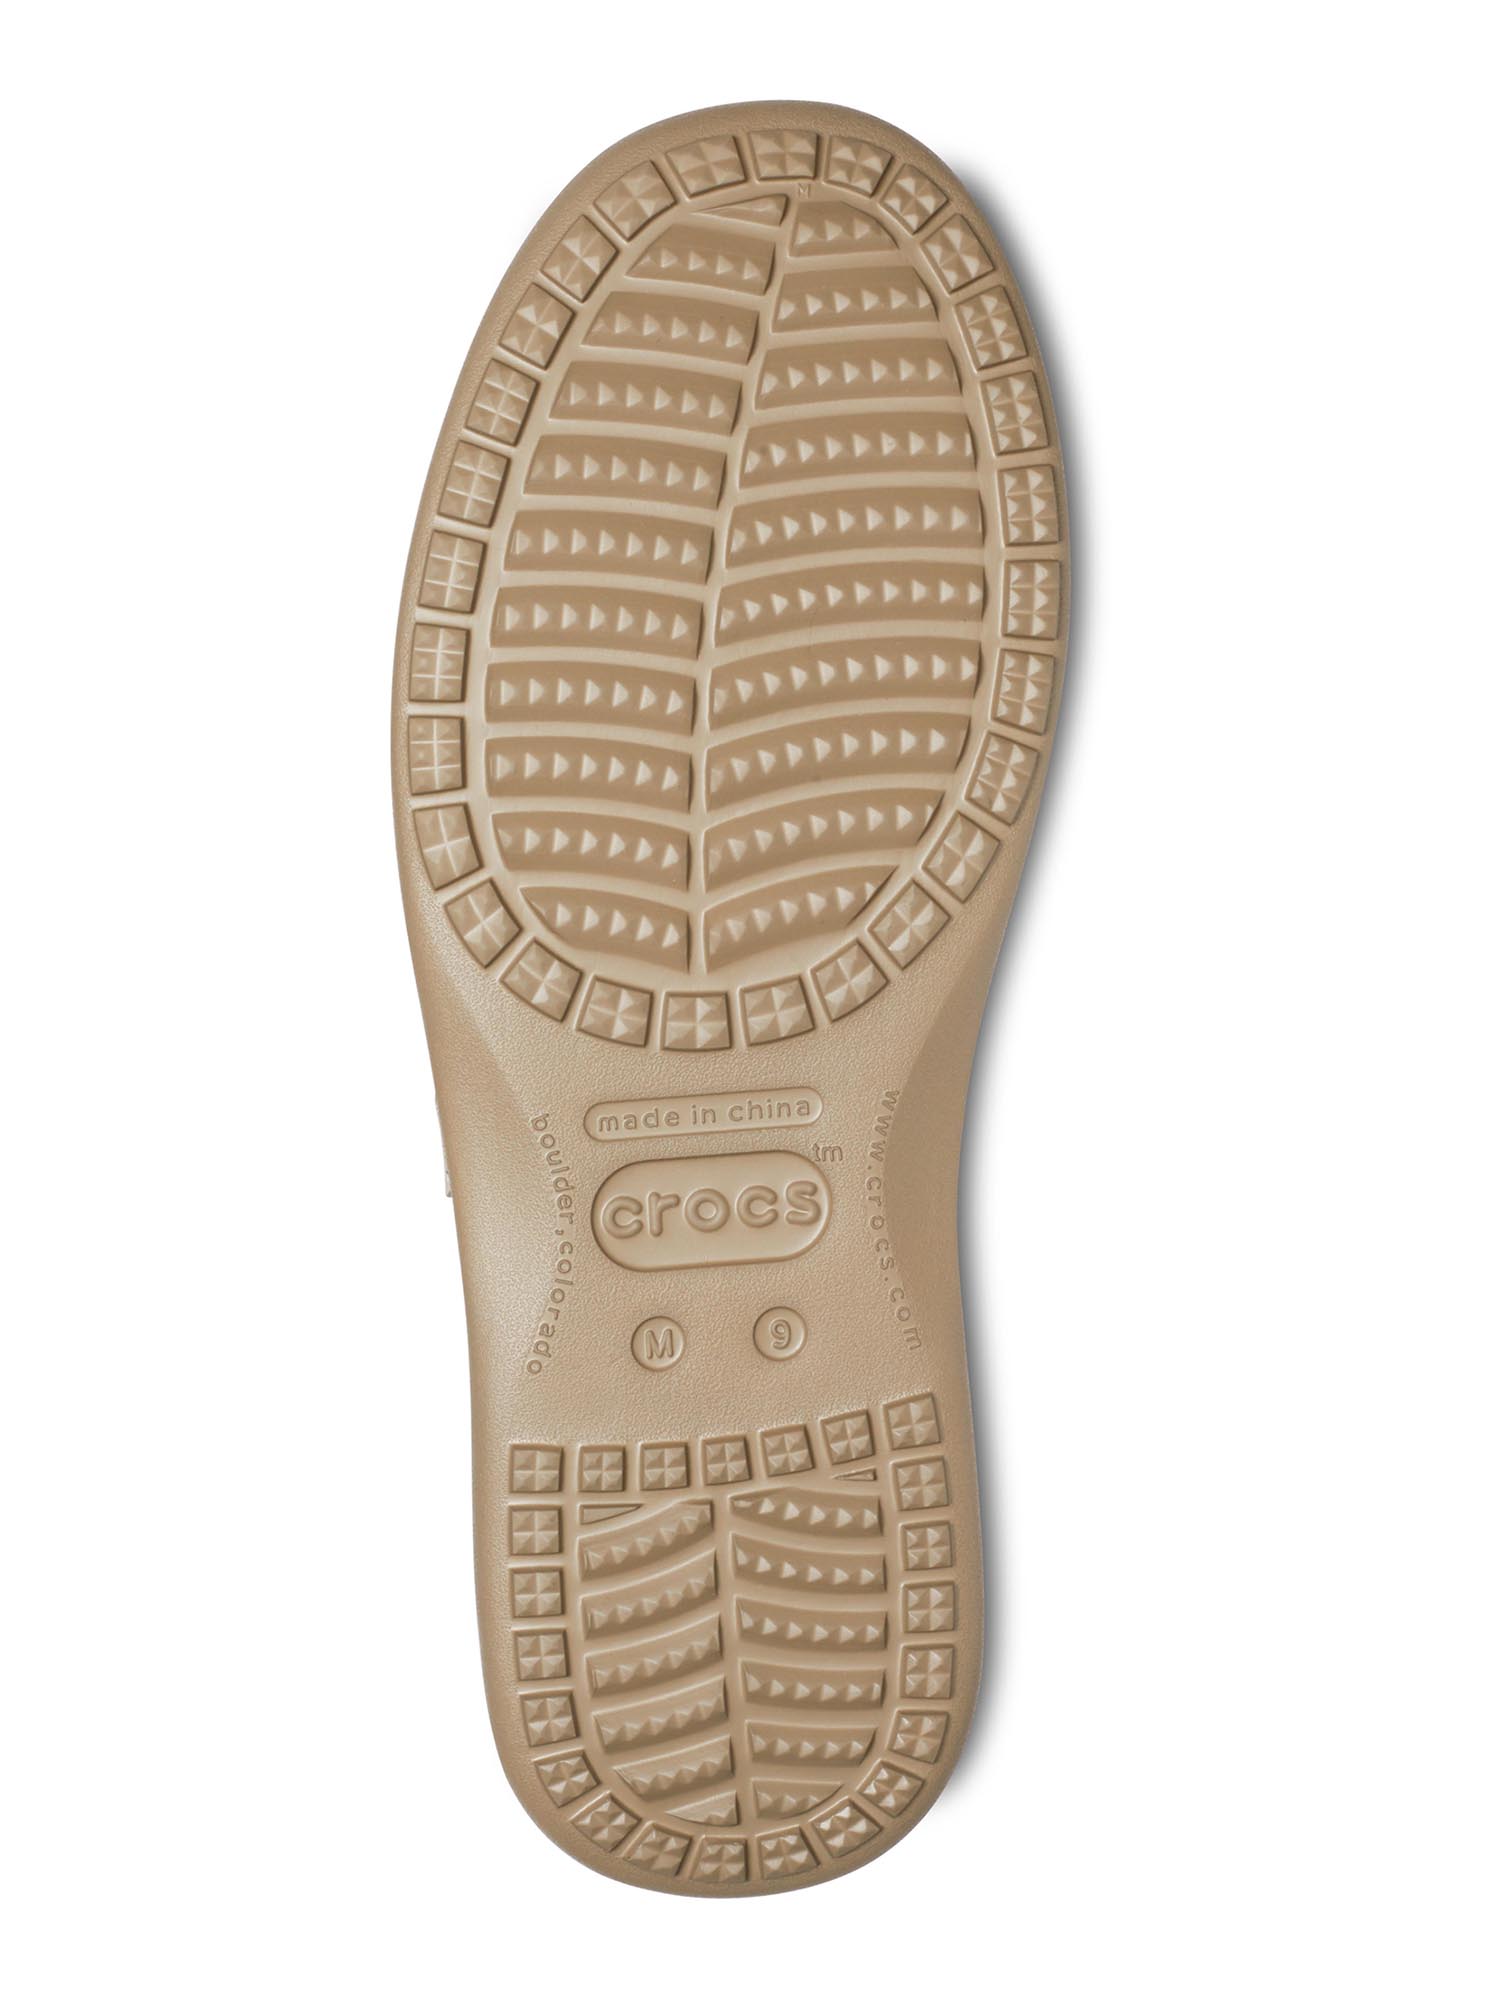 Crocs Men's Santa Cruz Realtree Edge Loafers - image 3 of 6